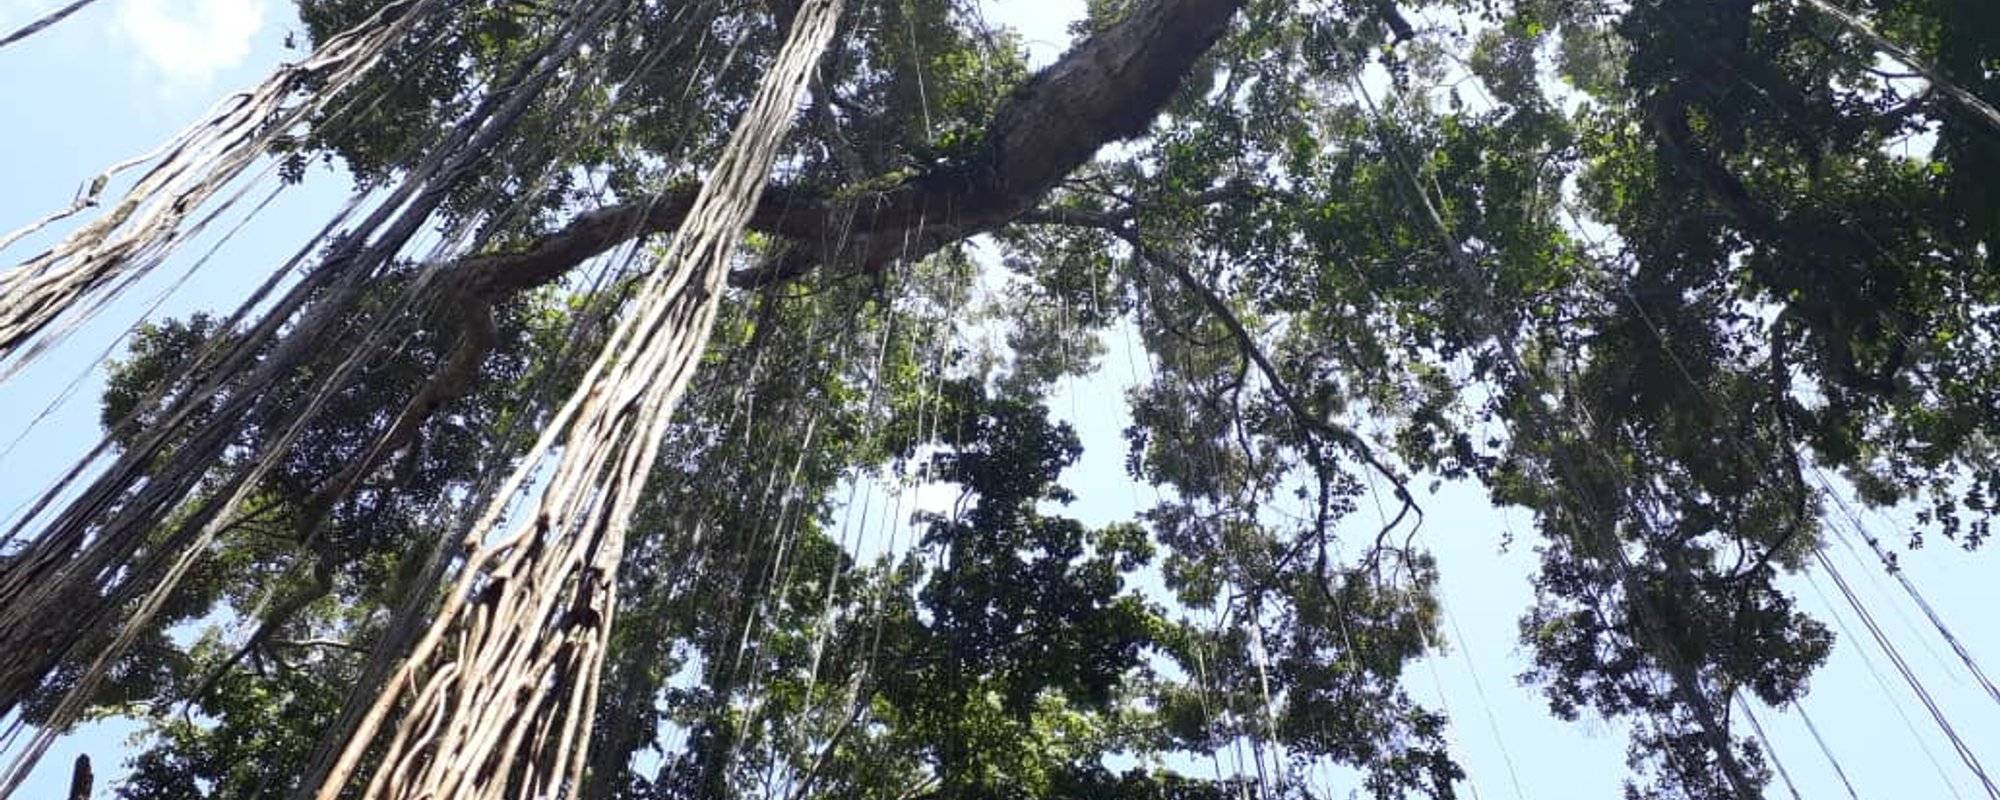 The forest was present in Rio Claro, Barquisimeto.